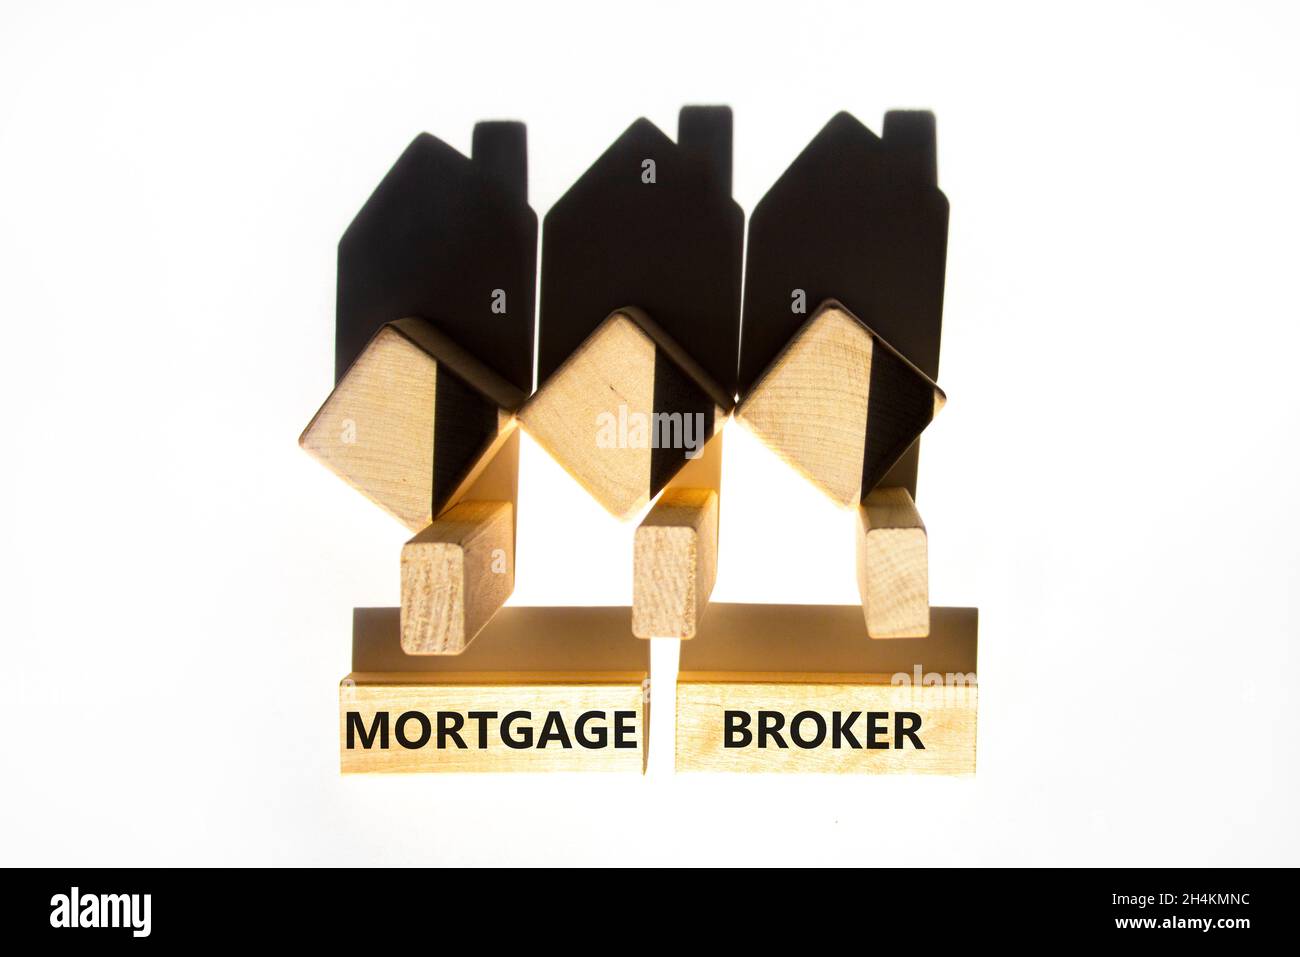 Symbole de courtier hypothécaire.Concept mots 'Mortgage broker' sur des blocs de bois près de maisons miniatures en bois de l'ombre.Magnifique fond blanc.Buline Banque D'Images